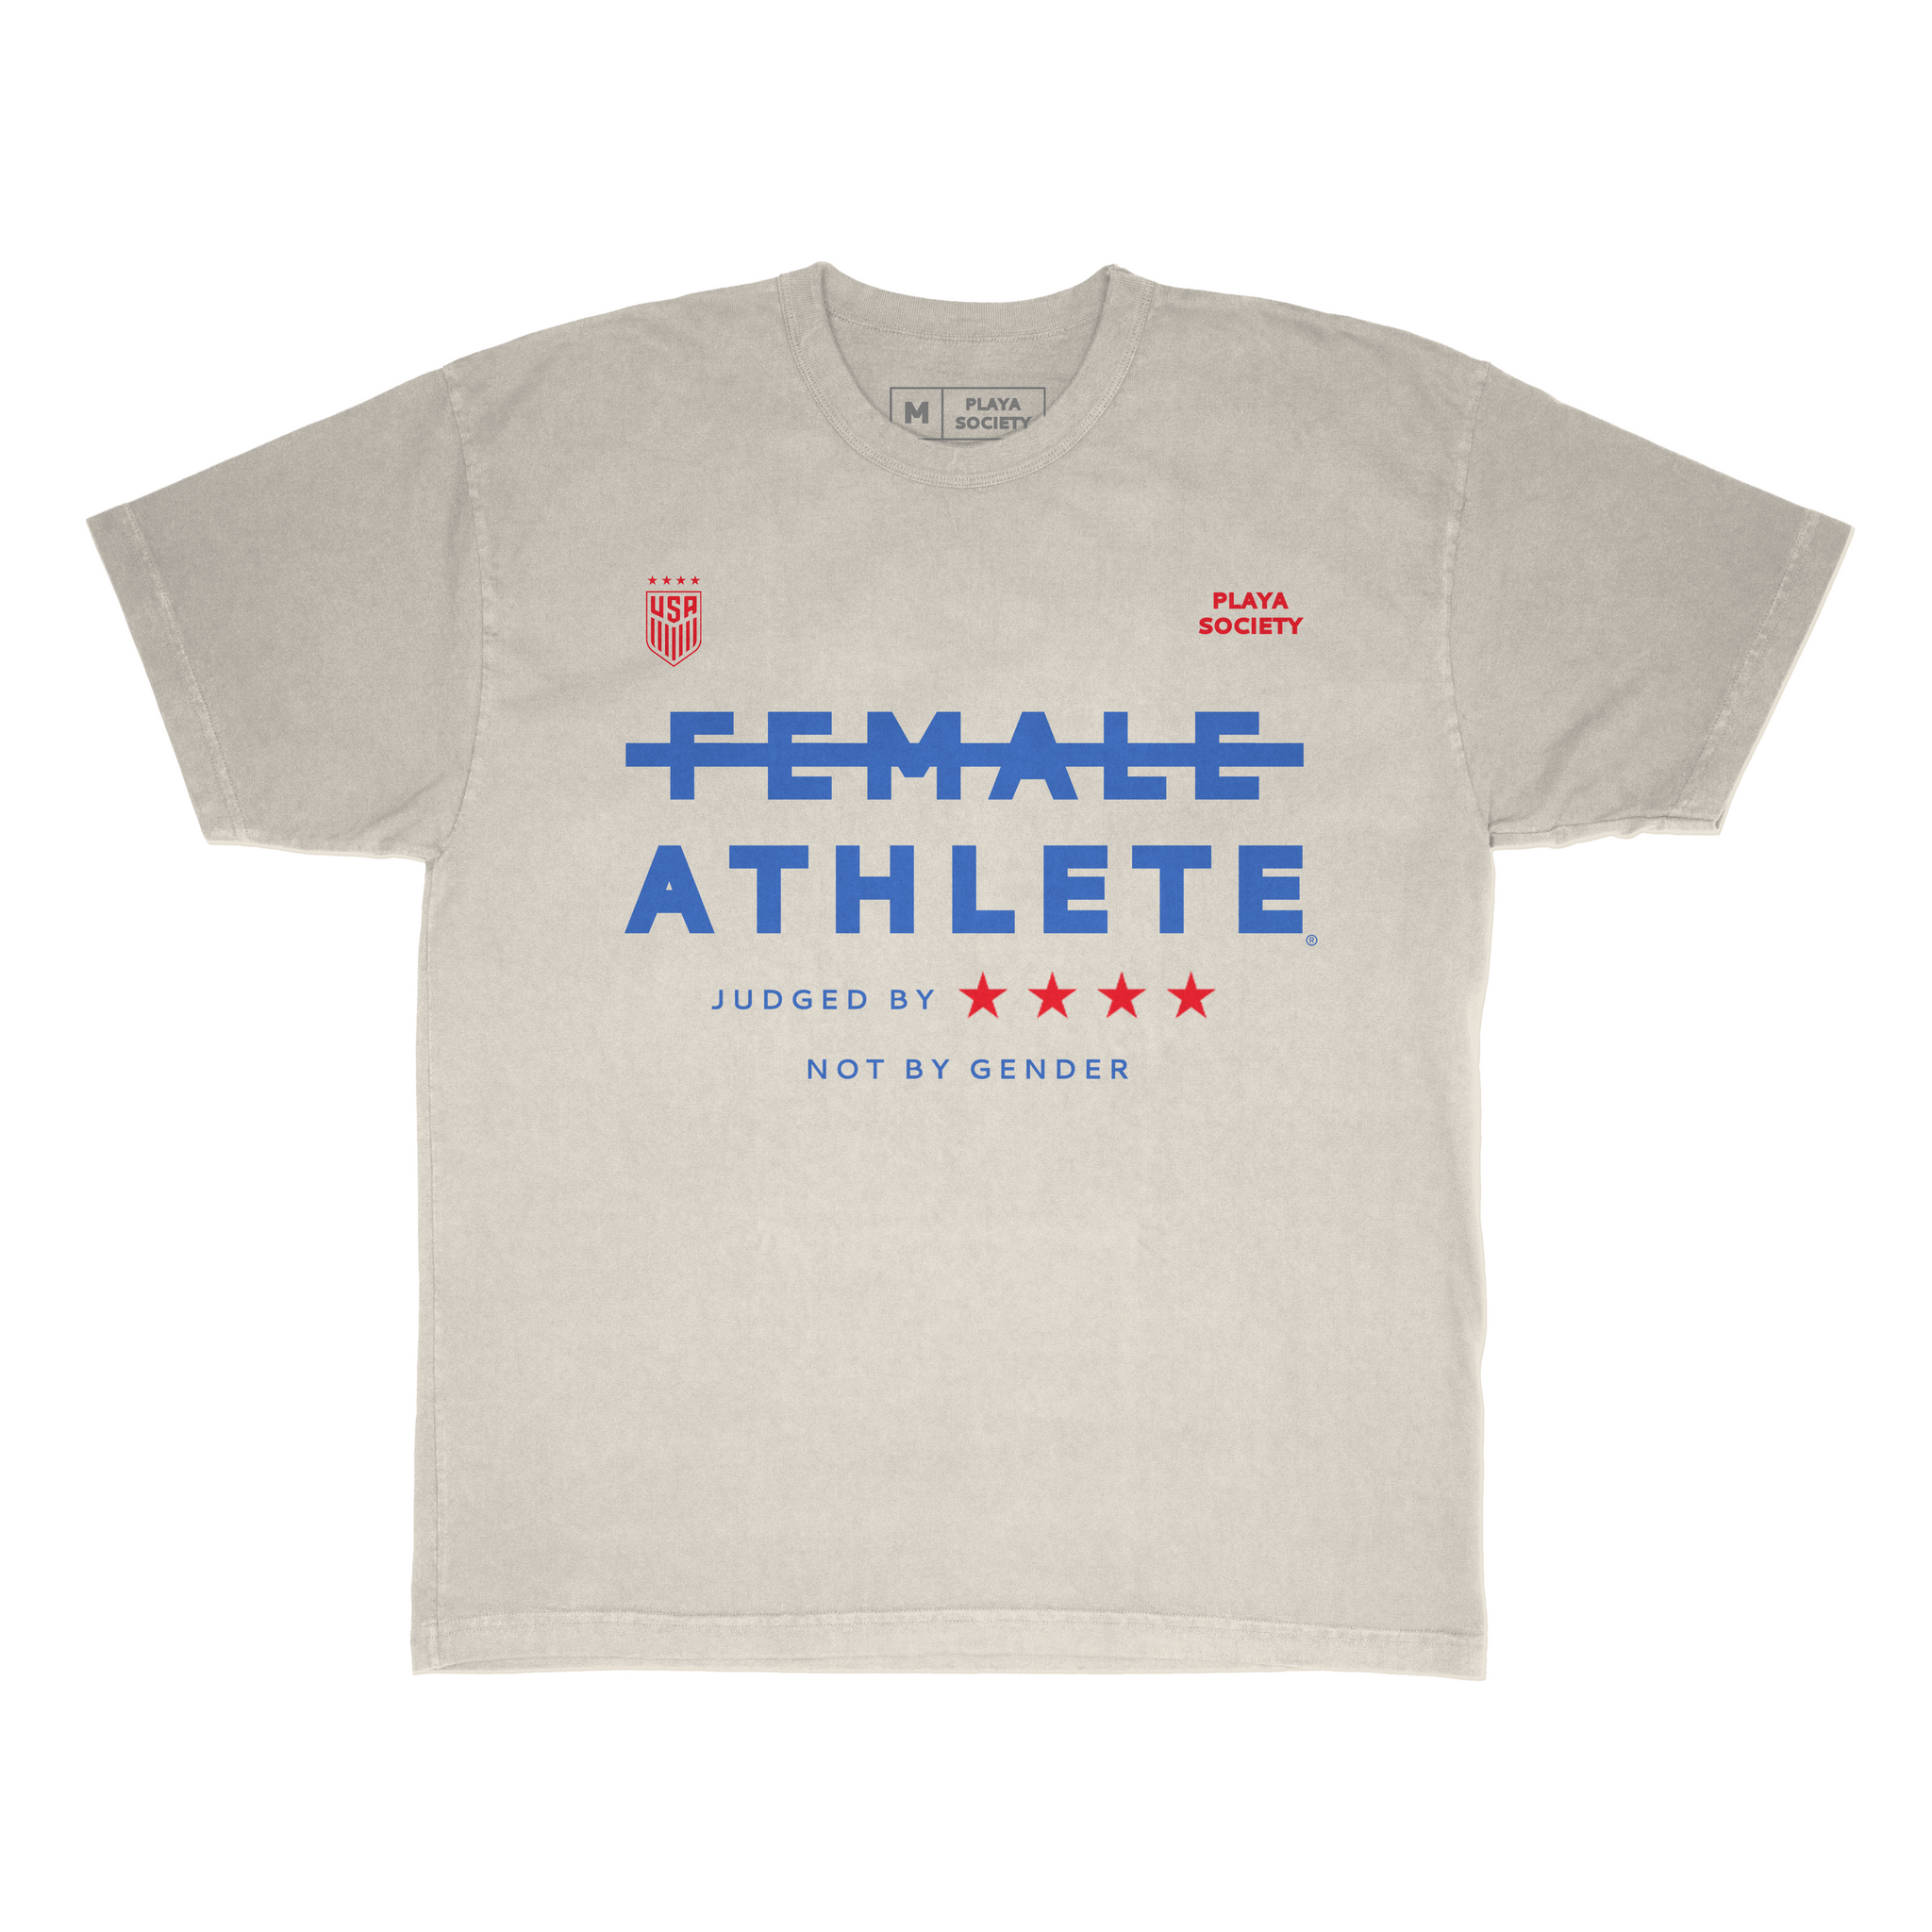 Playa Society USWNT Female Athlete T-Shirt - Playa Society